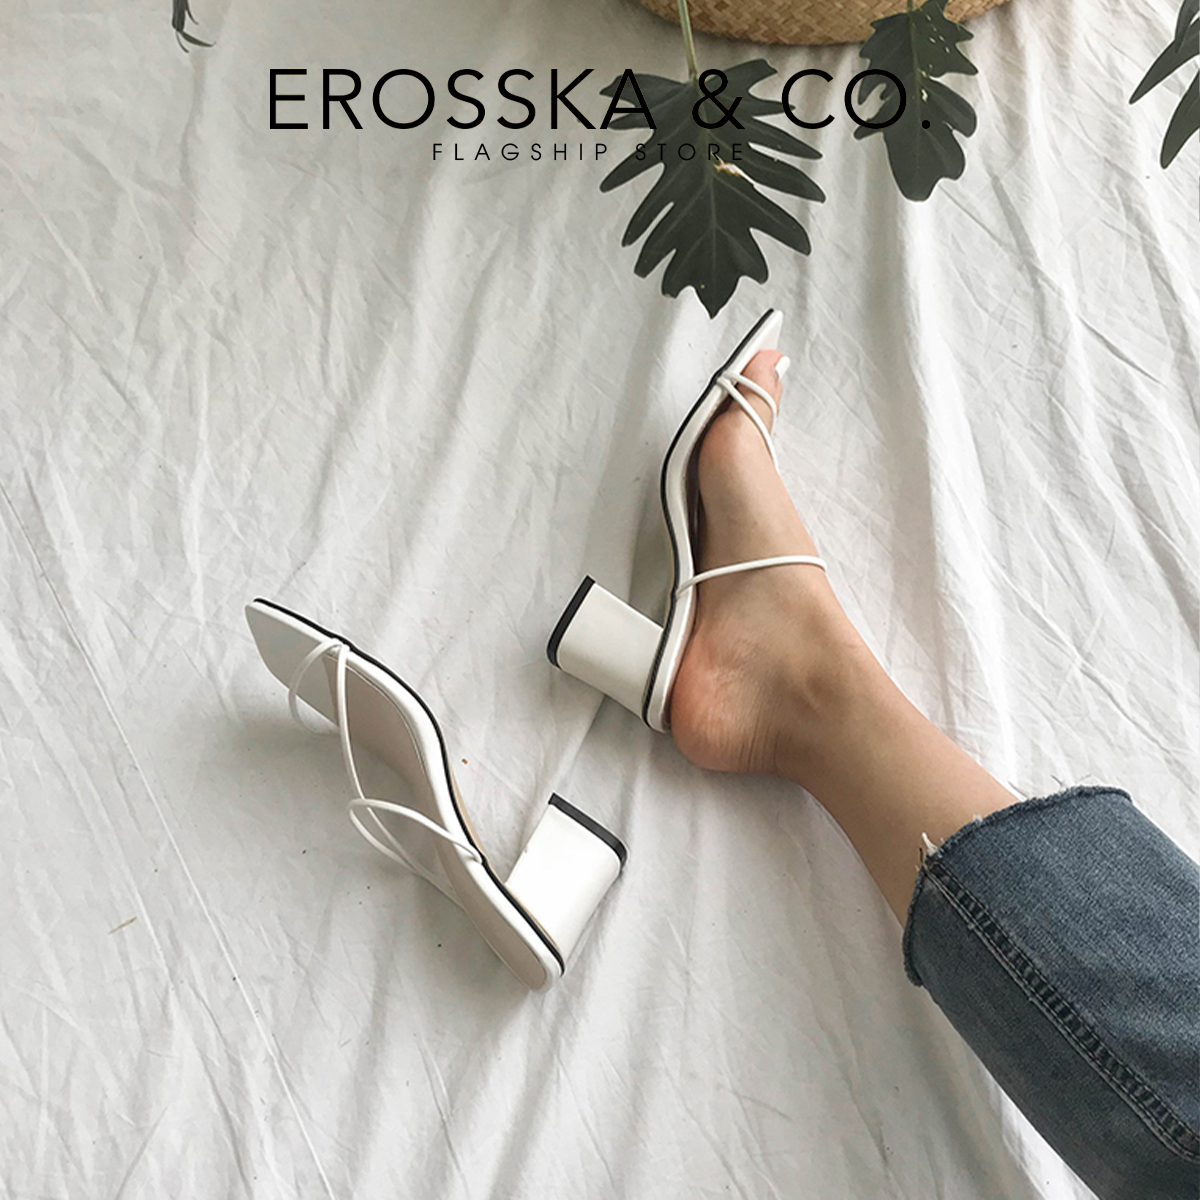 Dép cao gót Erosska mũi vuông phối dây kiểu dáng Hàn Quốc cao 7cm màu trắng - EM074